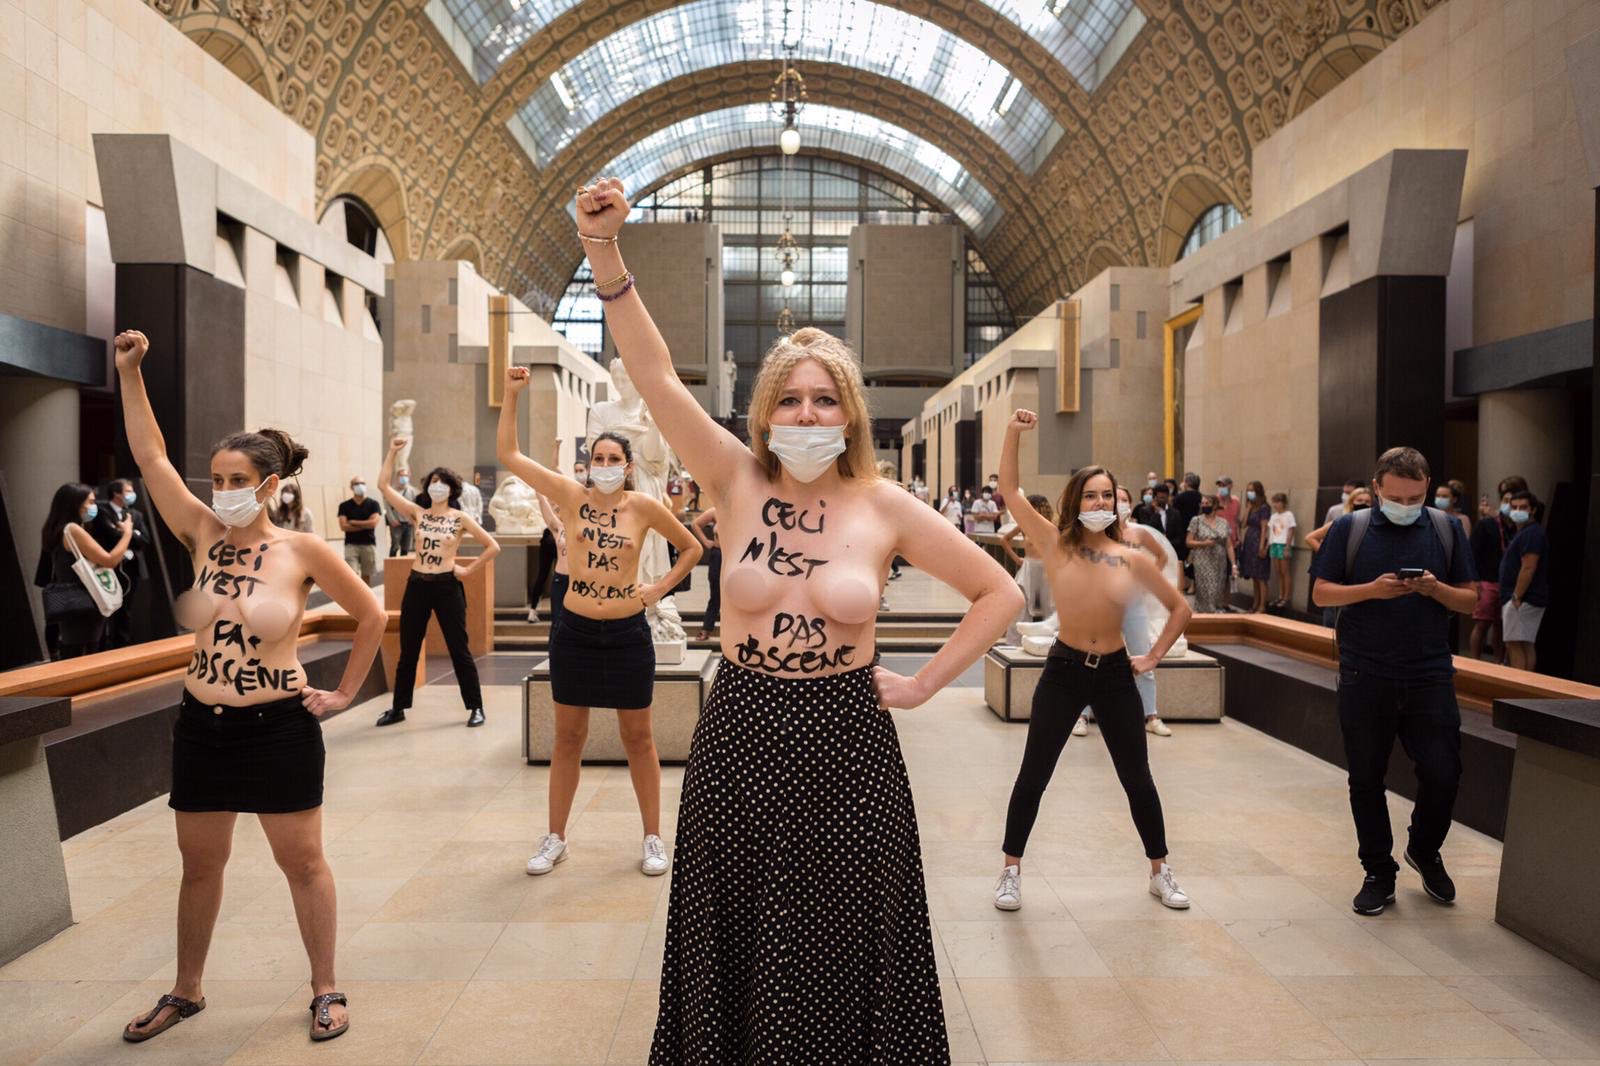 Protestan en el Museo de Orsay tras vetar la entrada a una mujer con escote